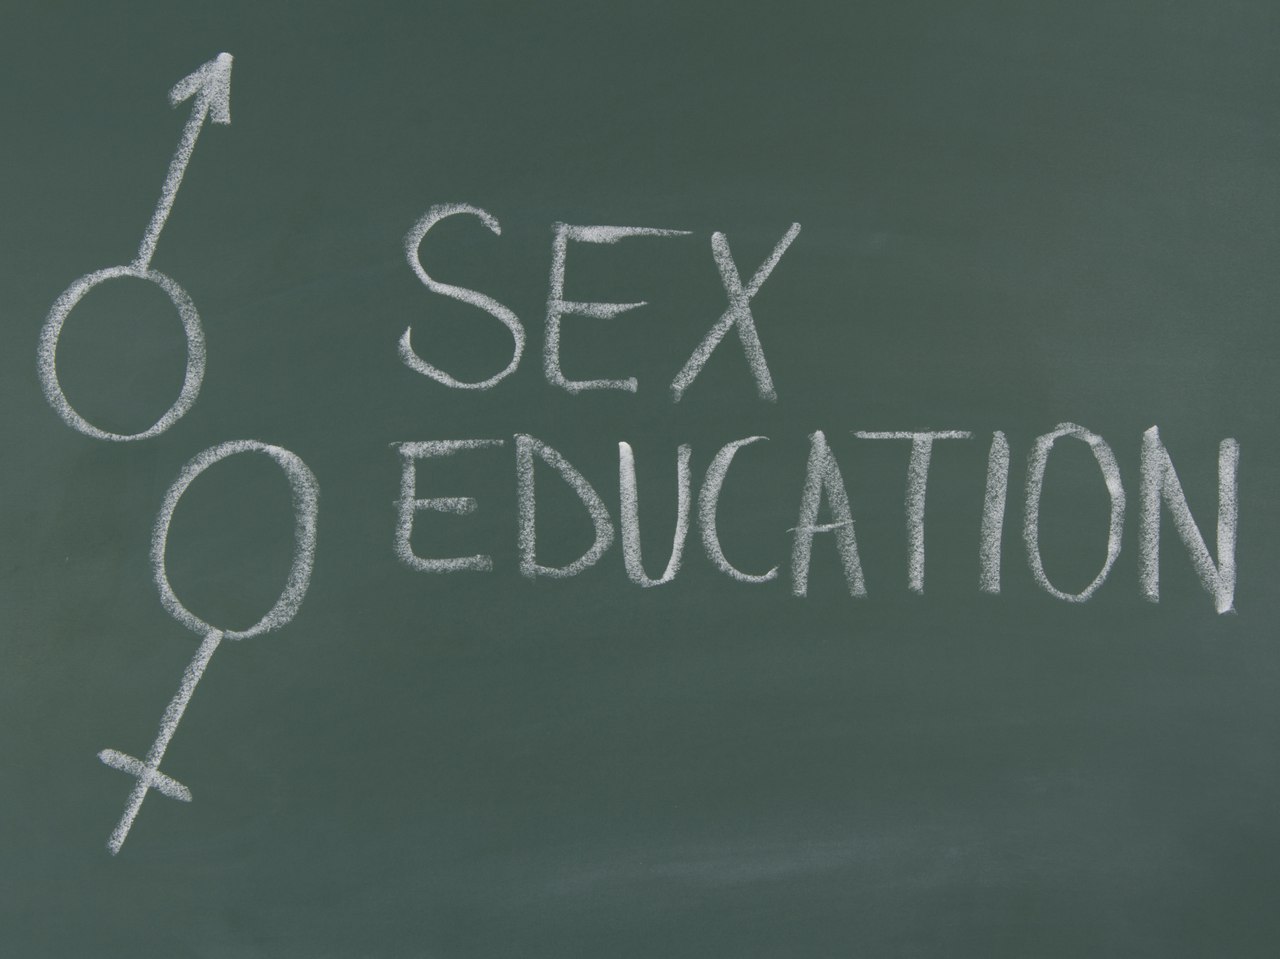 Сексуальное воспитание для подростков. Необходимость или разврат молодежи?